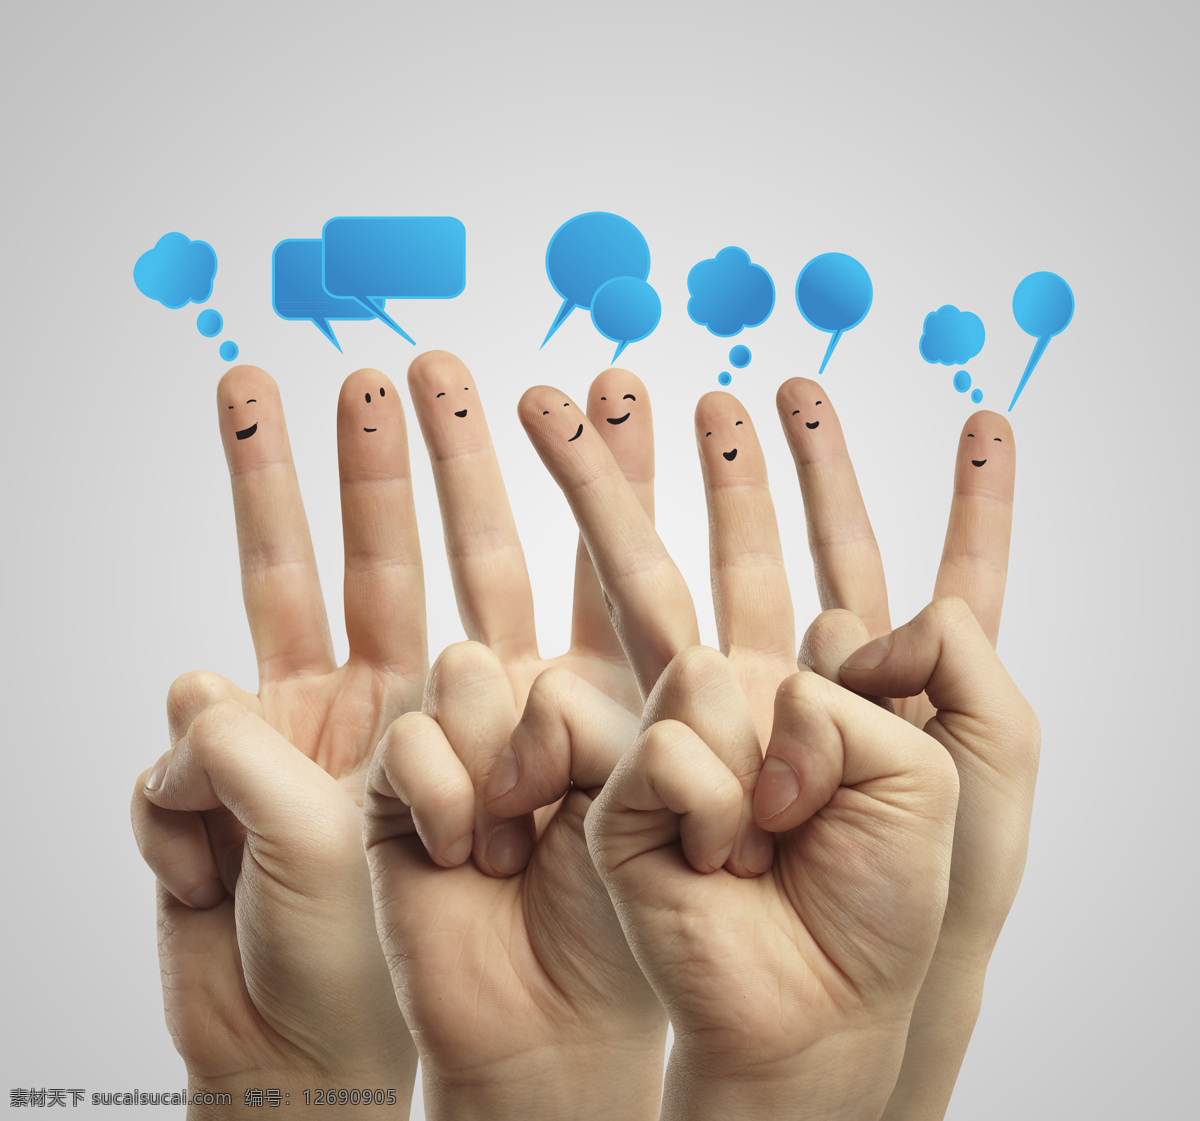 对话框 手指 表情 手指表情 手掌 手势 社交媒体 现代商务 商务金融